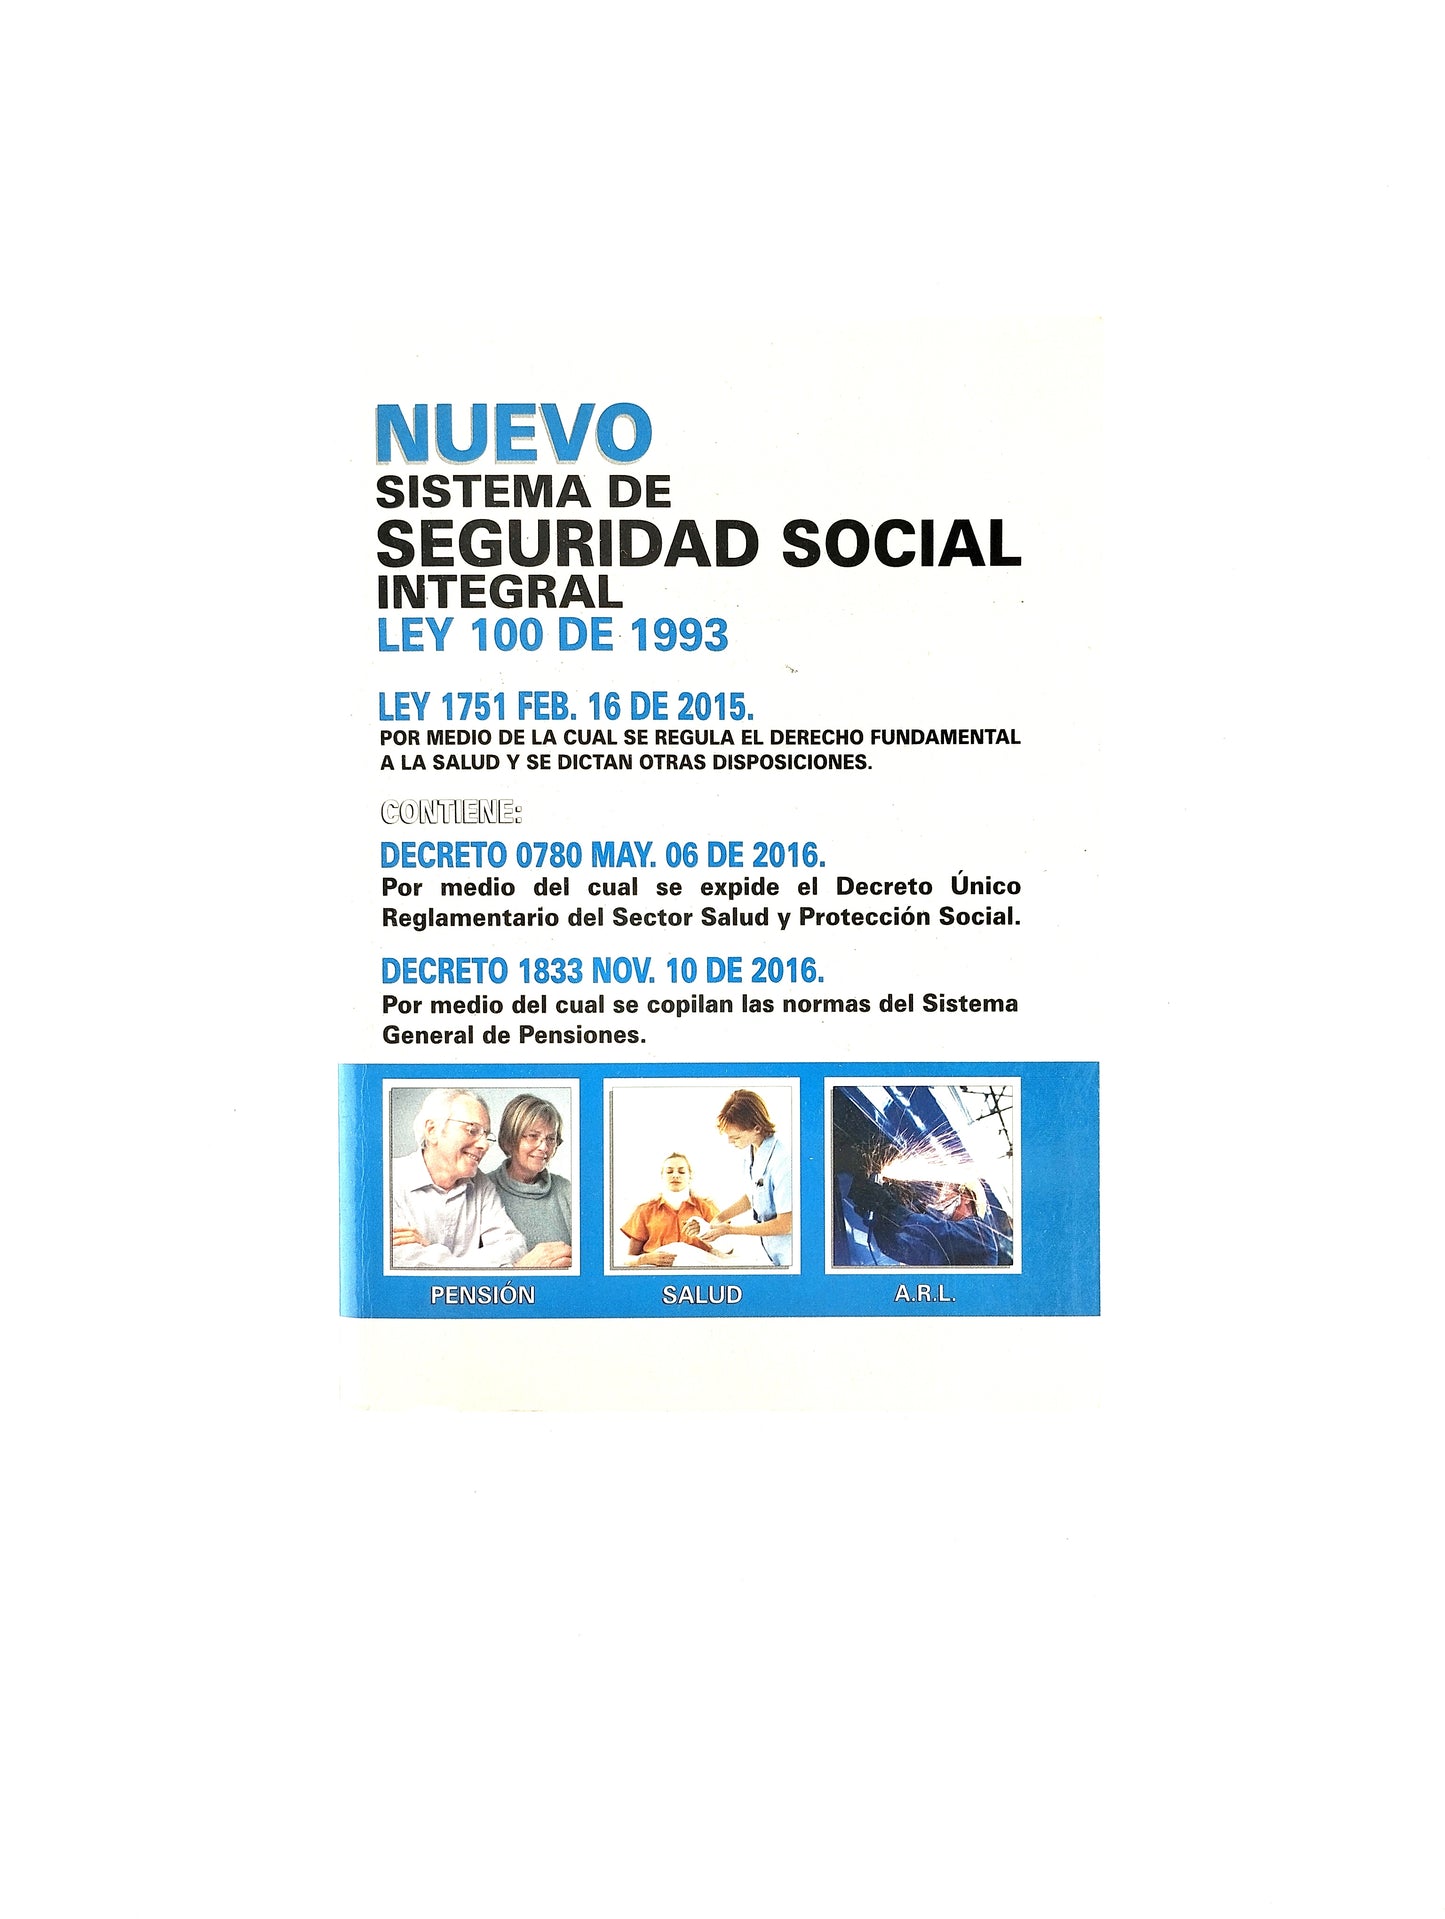 Nuevo sistema de seguridad social integral ley 100 de 1993